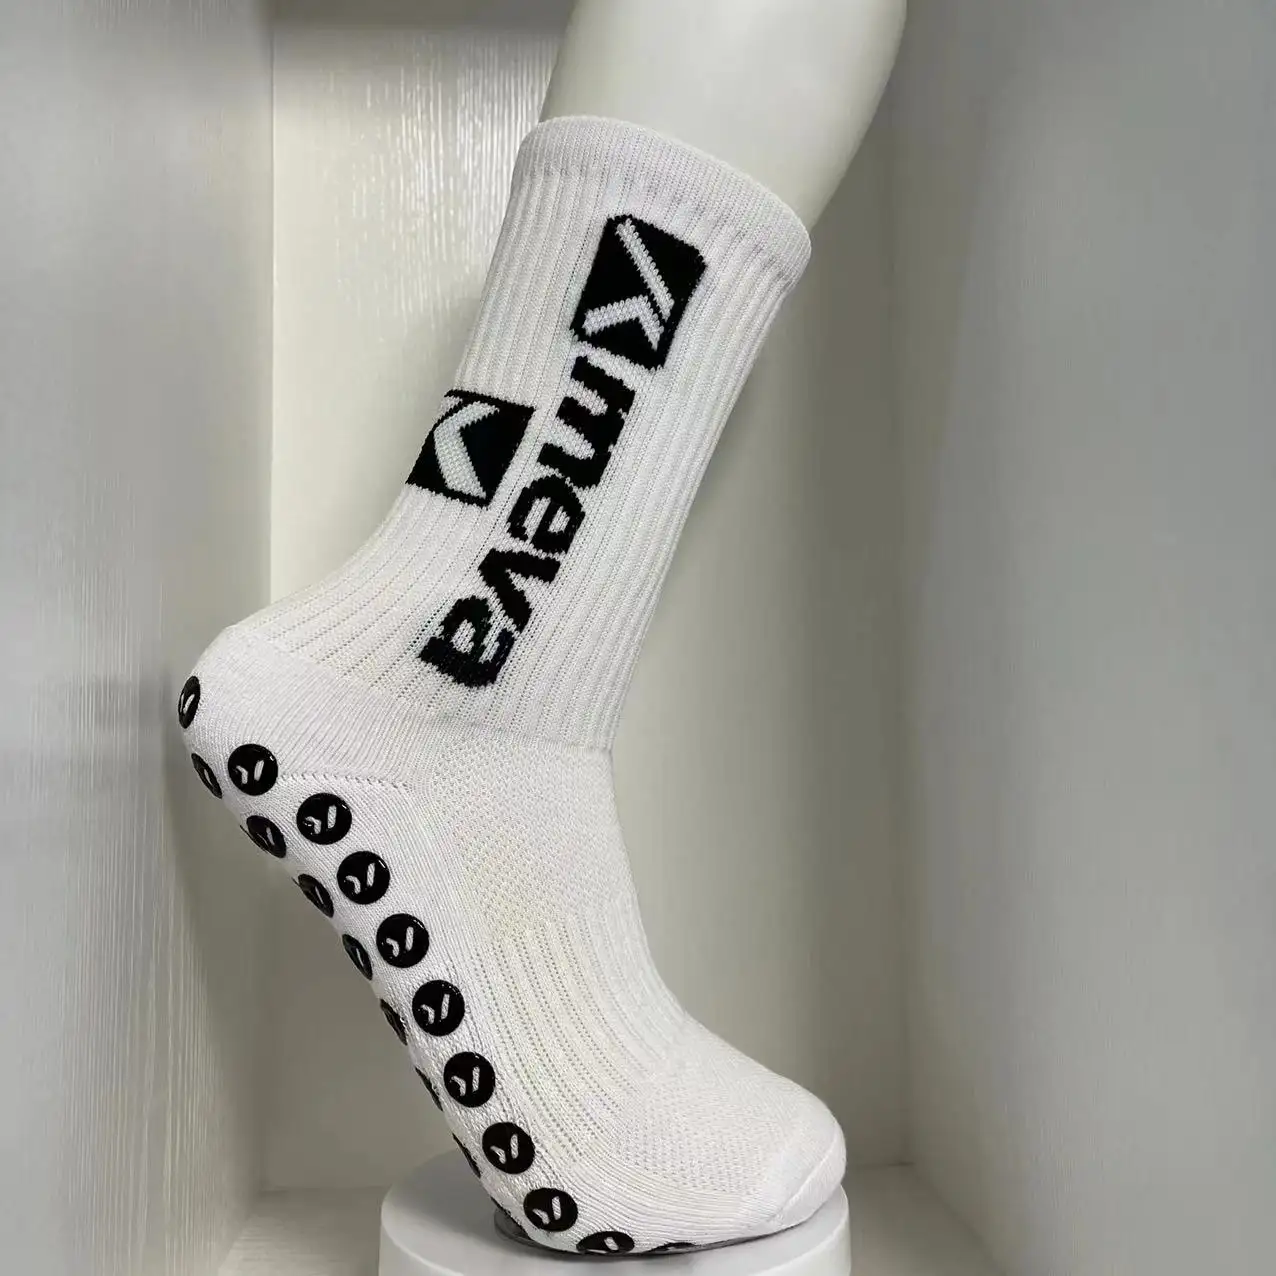 Profesyonel kaymaz futbolcu çorapları fabrika kendi LOGO tasarım özel kavrama futbol çorapları özelleştirilmiş etiketleri ile etiketleri ambalaj